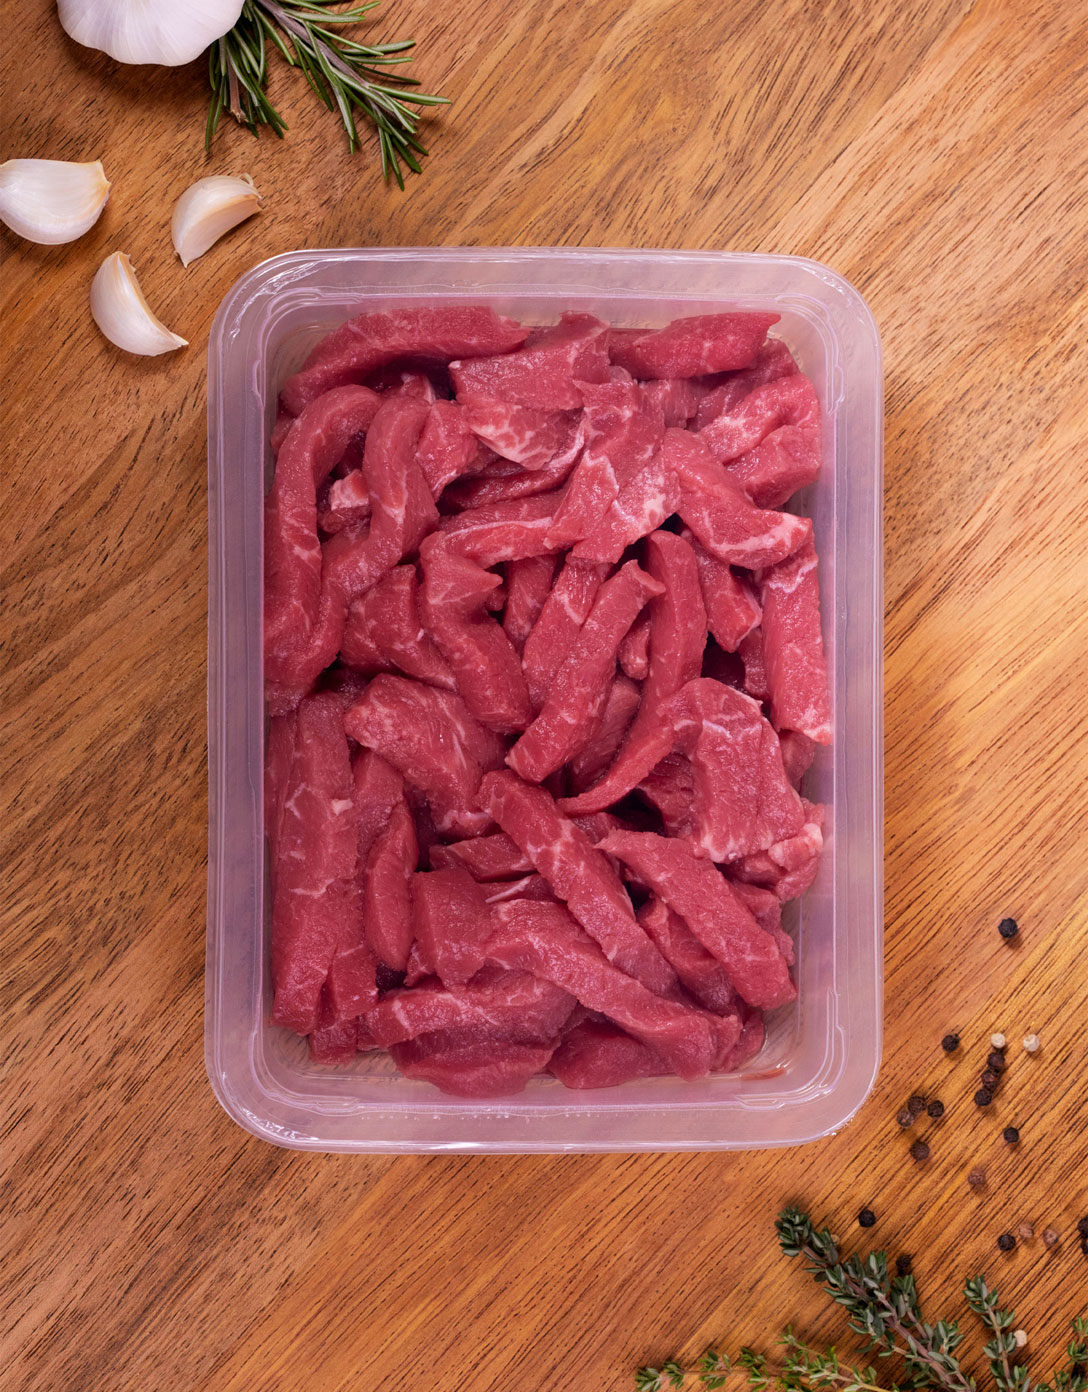 Teys meat in packaging